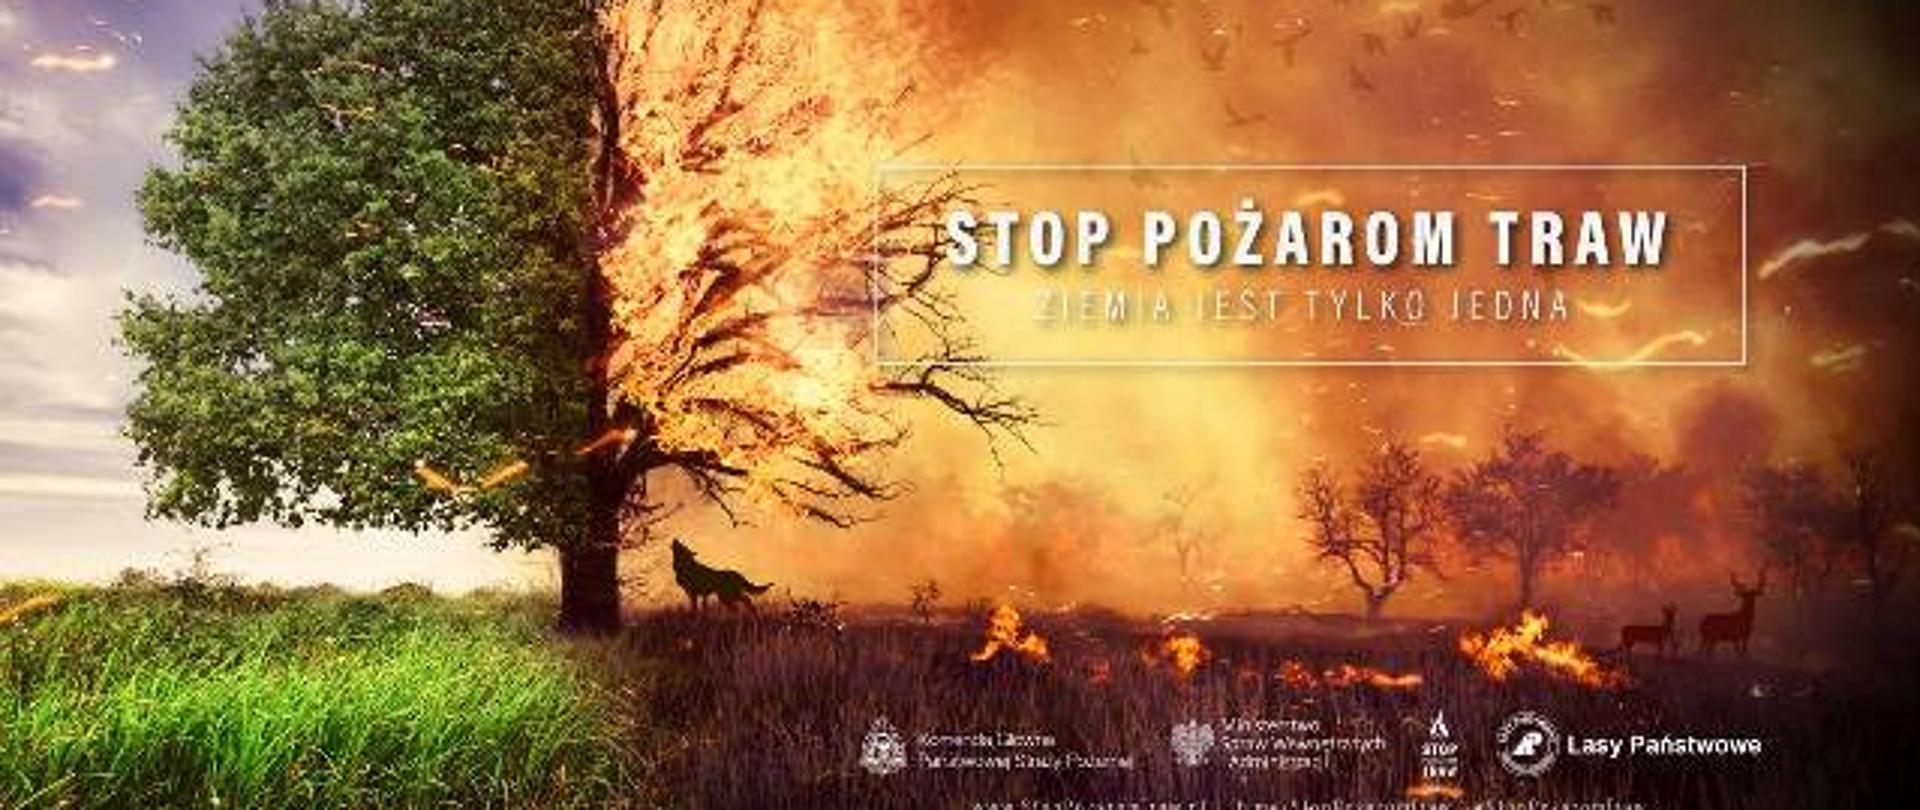 Zdjęcie przedstawia logo kampanii społecznej "Stop Pożarom Traw". Na zdjęciu widnieje płonące drzewo.